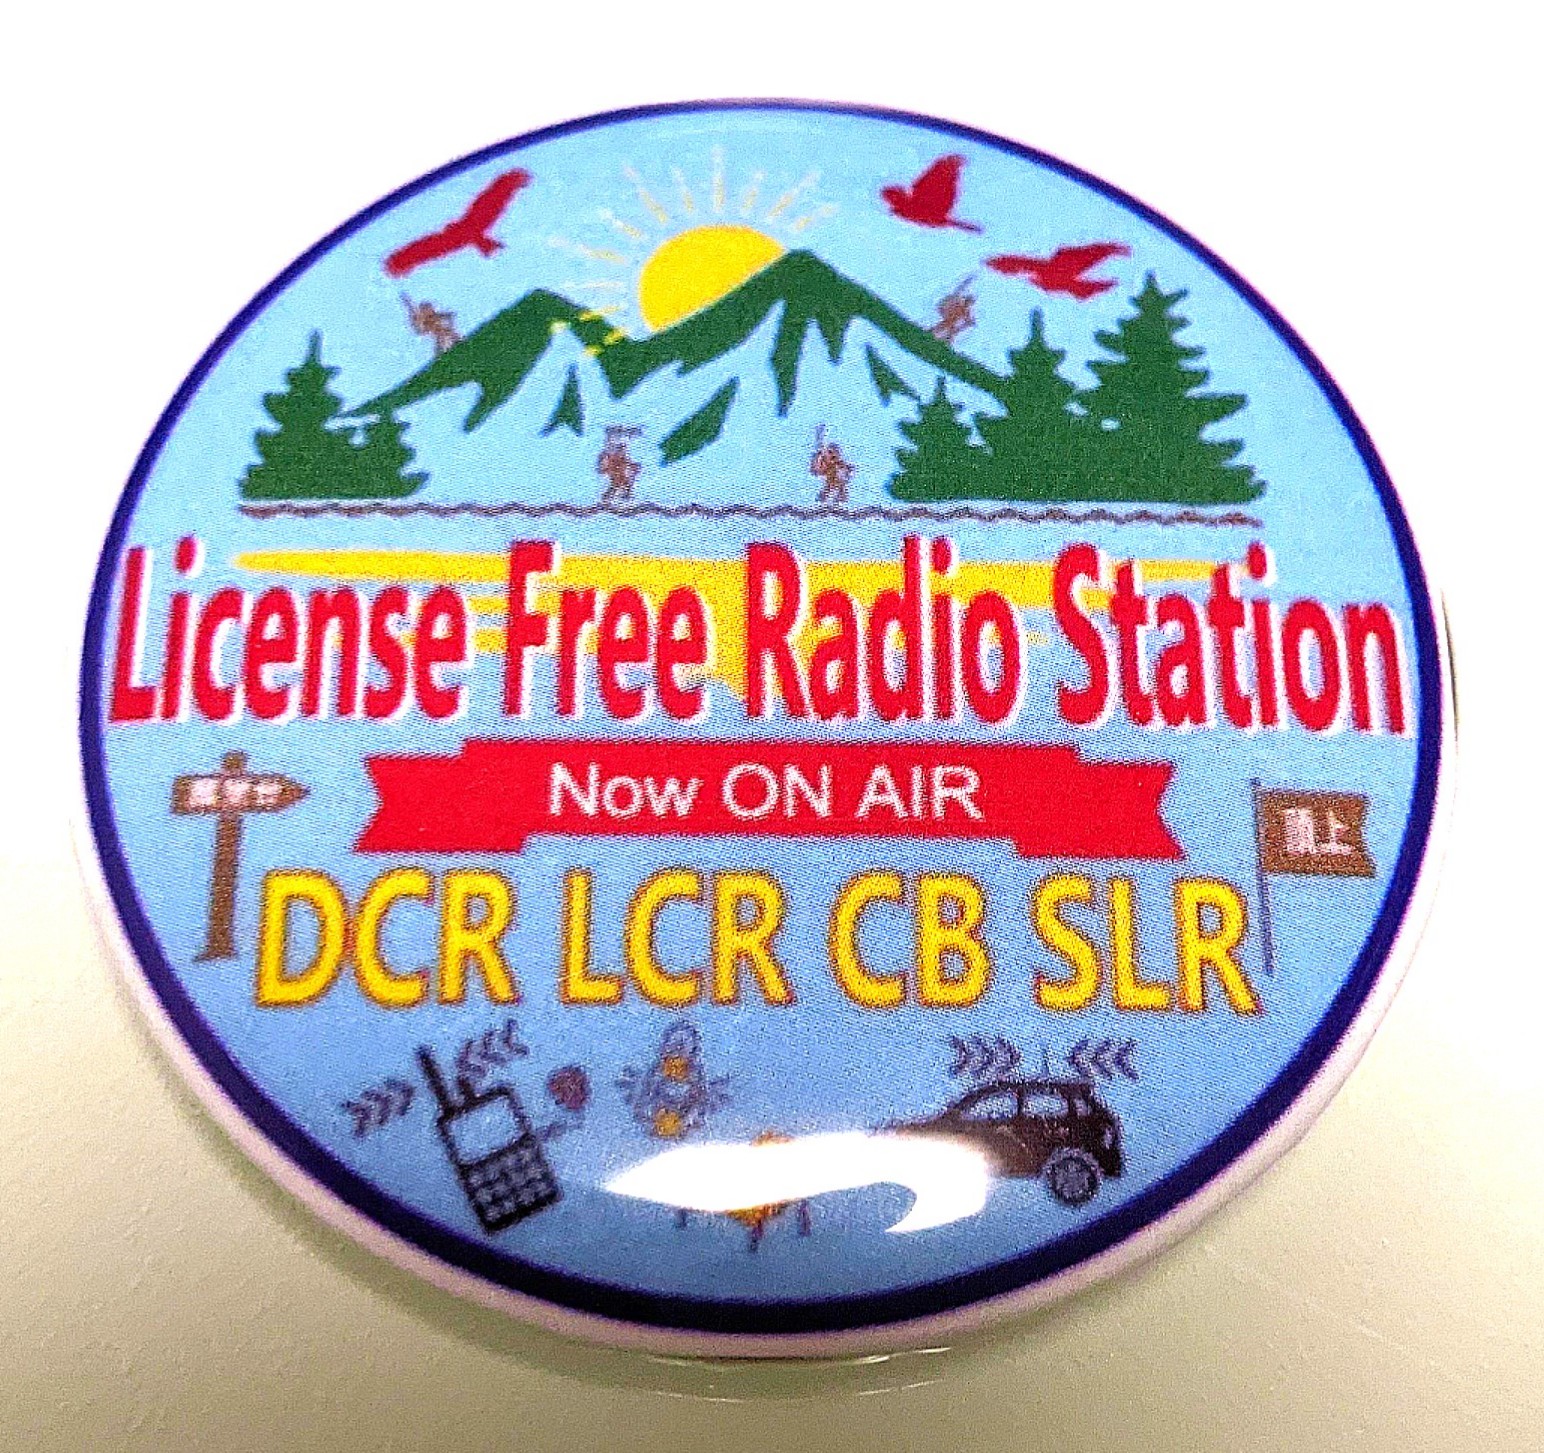 ライセンスフリーラジオ局 オリジナルバッジ オリジナル缶バッジ(56mm)